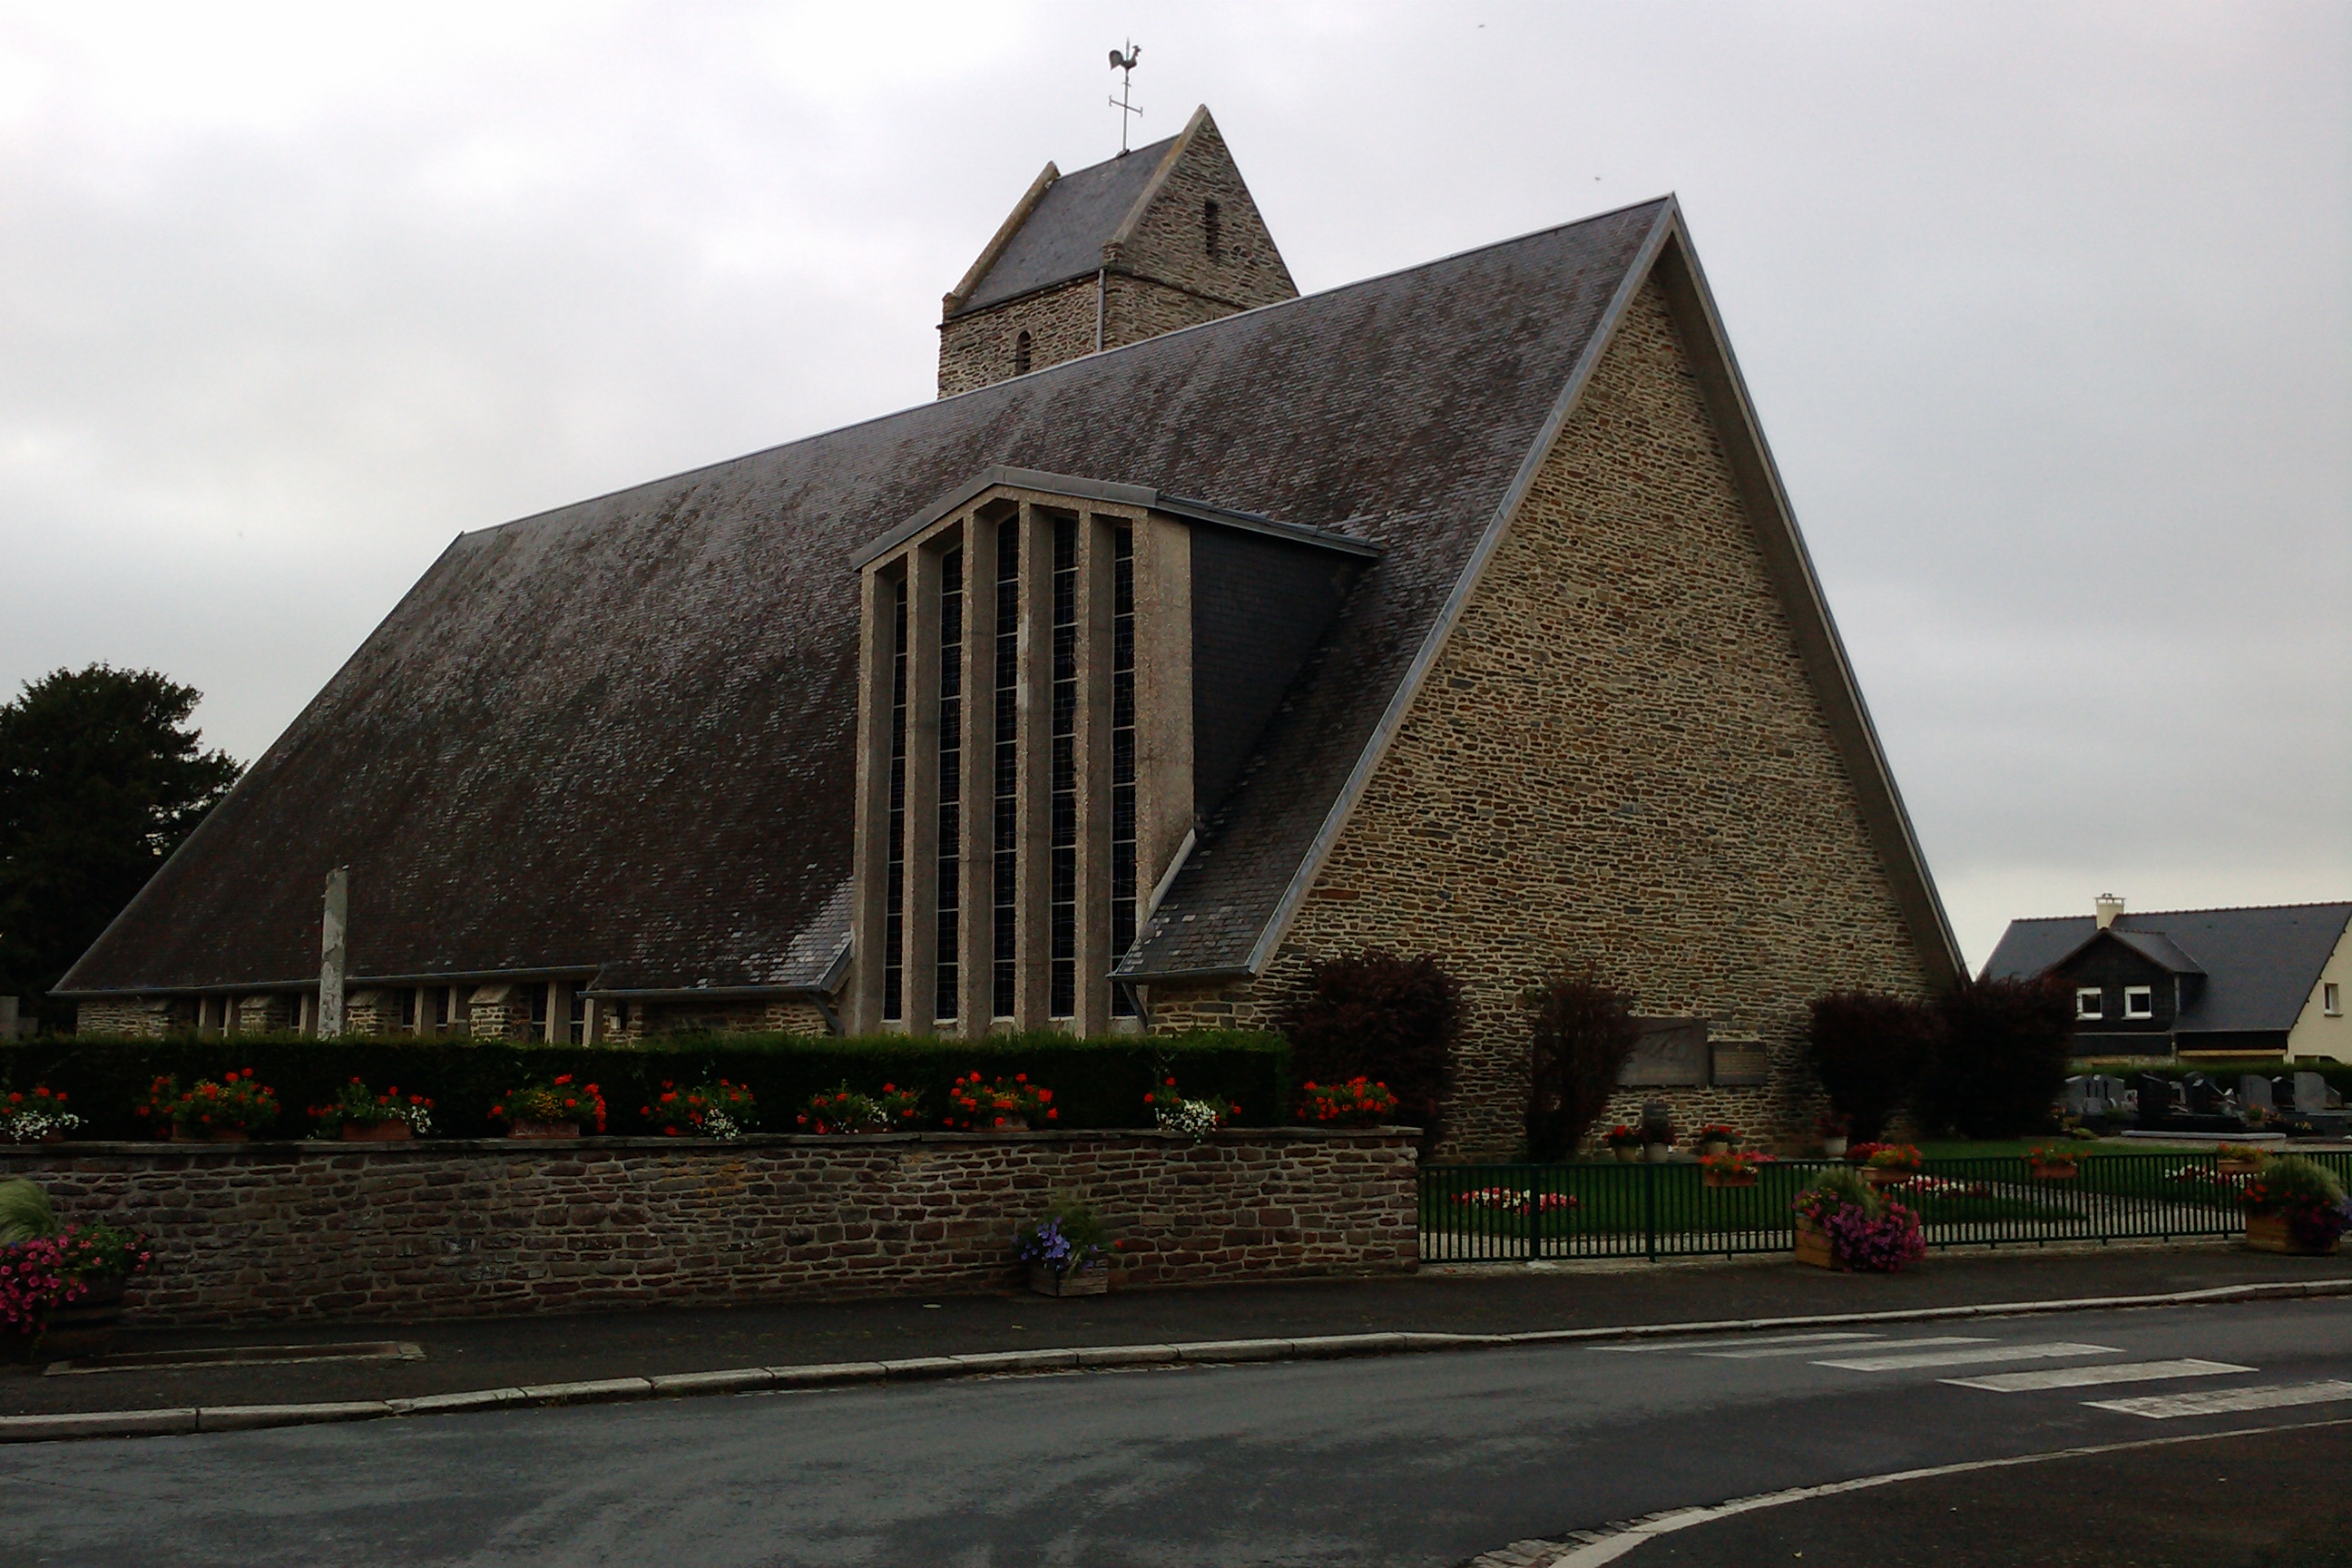 Une bâtière est un toit composé de deux pentes inclinées, comme ici sur cette église Saint-Pierre. © Xfigpower, CC BY-SA 3.0, Wikimedia Commons